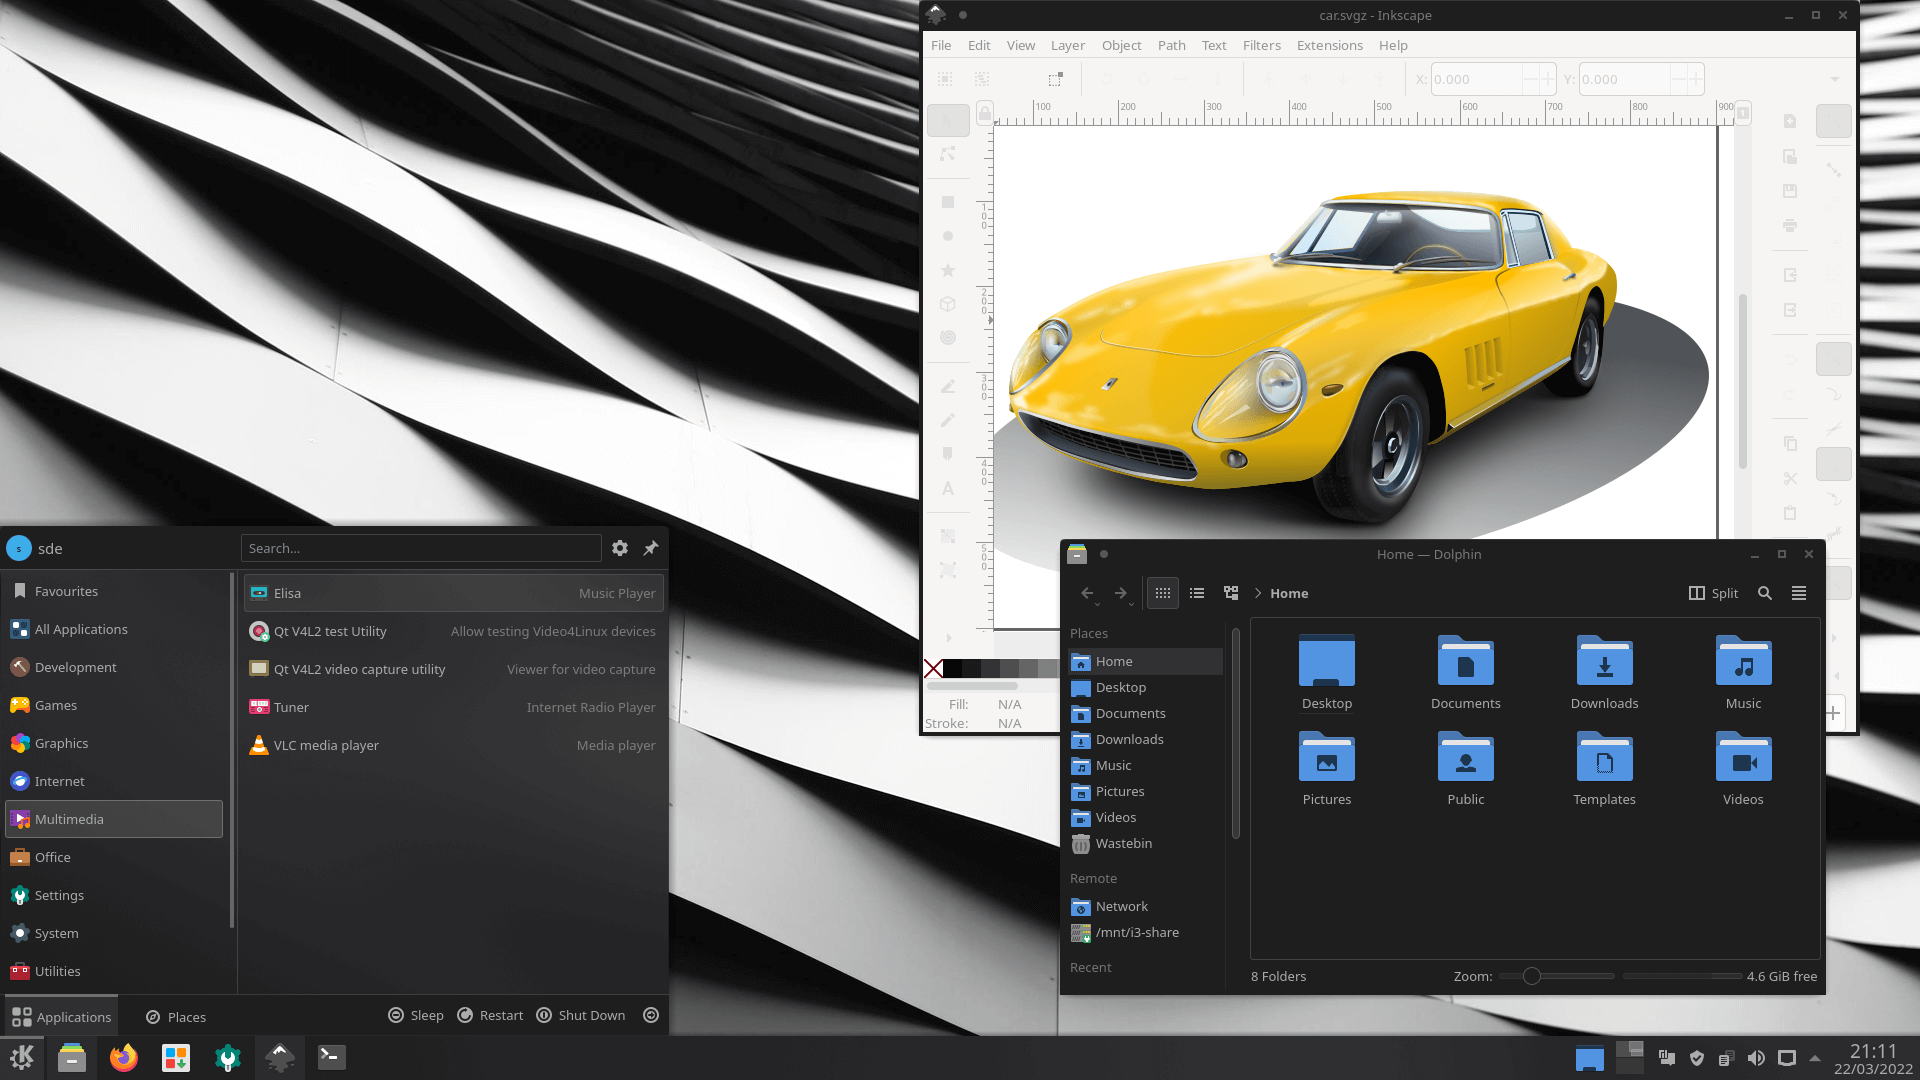 KDE Themes: Monochrome